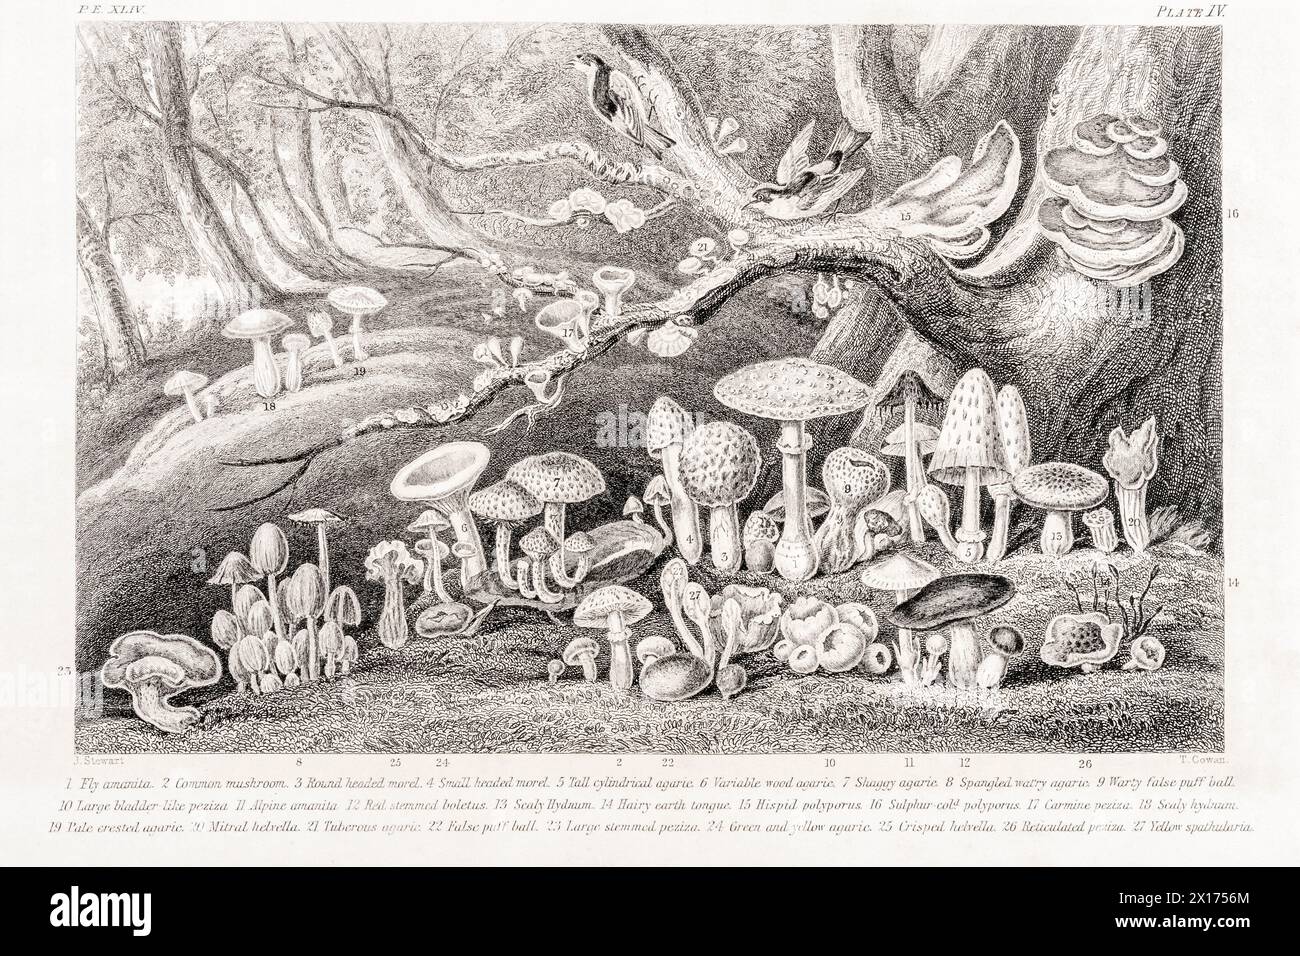 1872 viktorianisches botanisches Bild in William Rhind: Pilz - Pilzpflanzen. Zeigt einen ganzen Haufen gängiger britischer und europäischer Pilzarten. Stockfoto